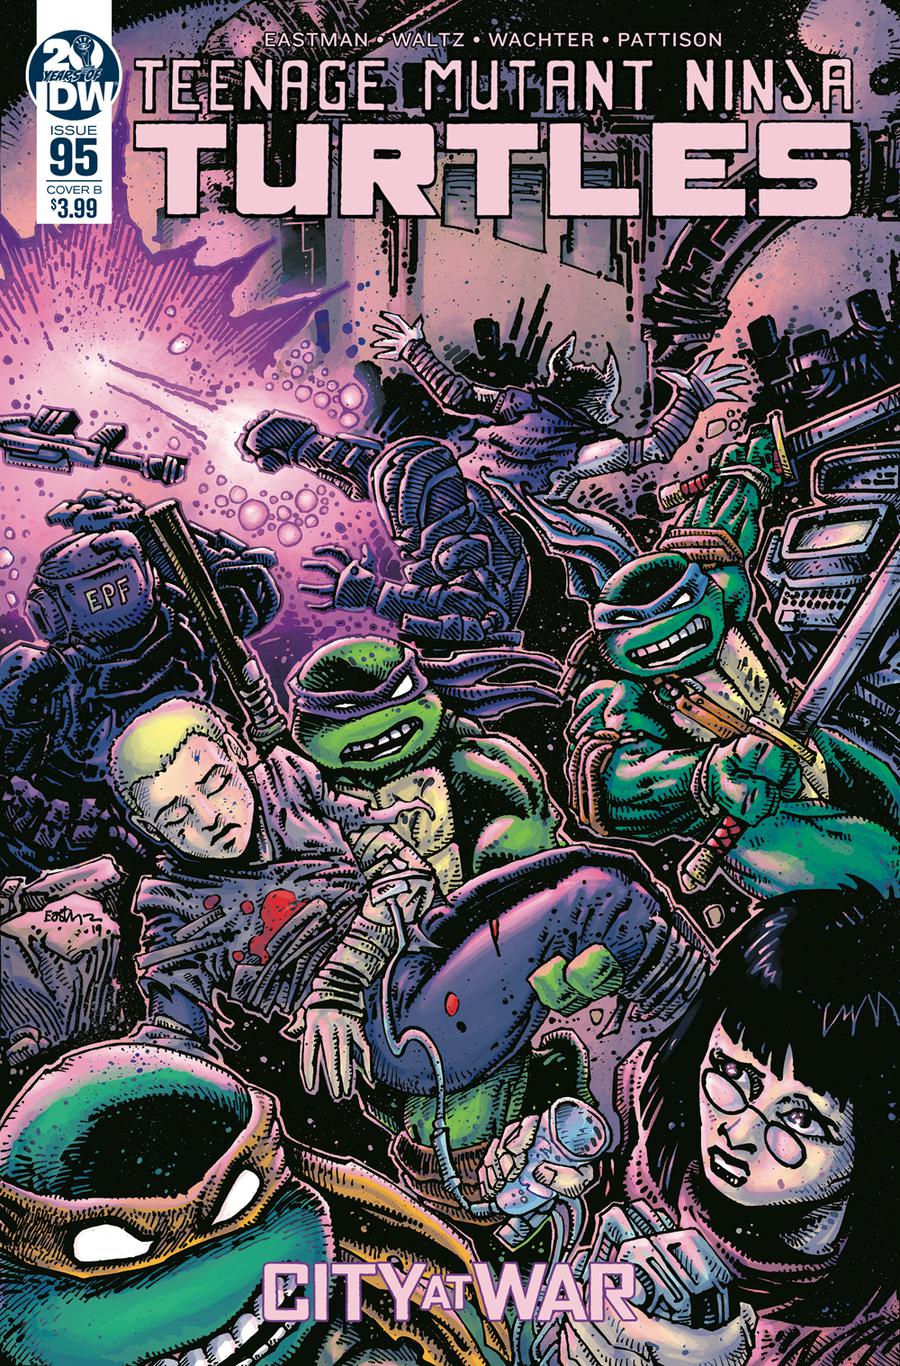 Teenage Mutant Ninja Turtles TMNT Vol 5 #1 & 2 Set NM Comics Eastman IDW 2011 